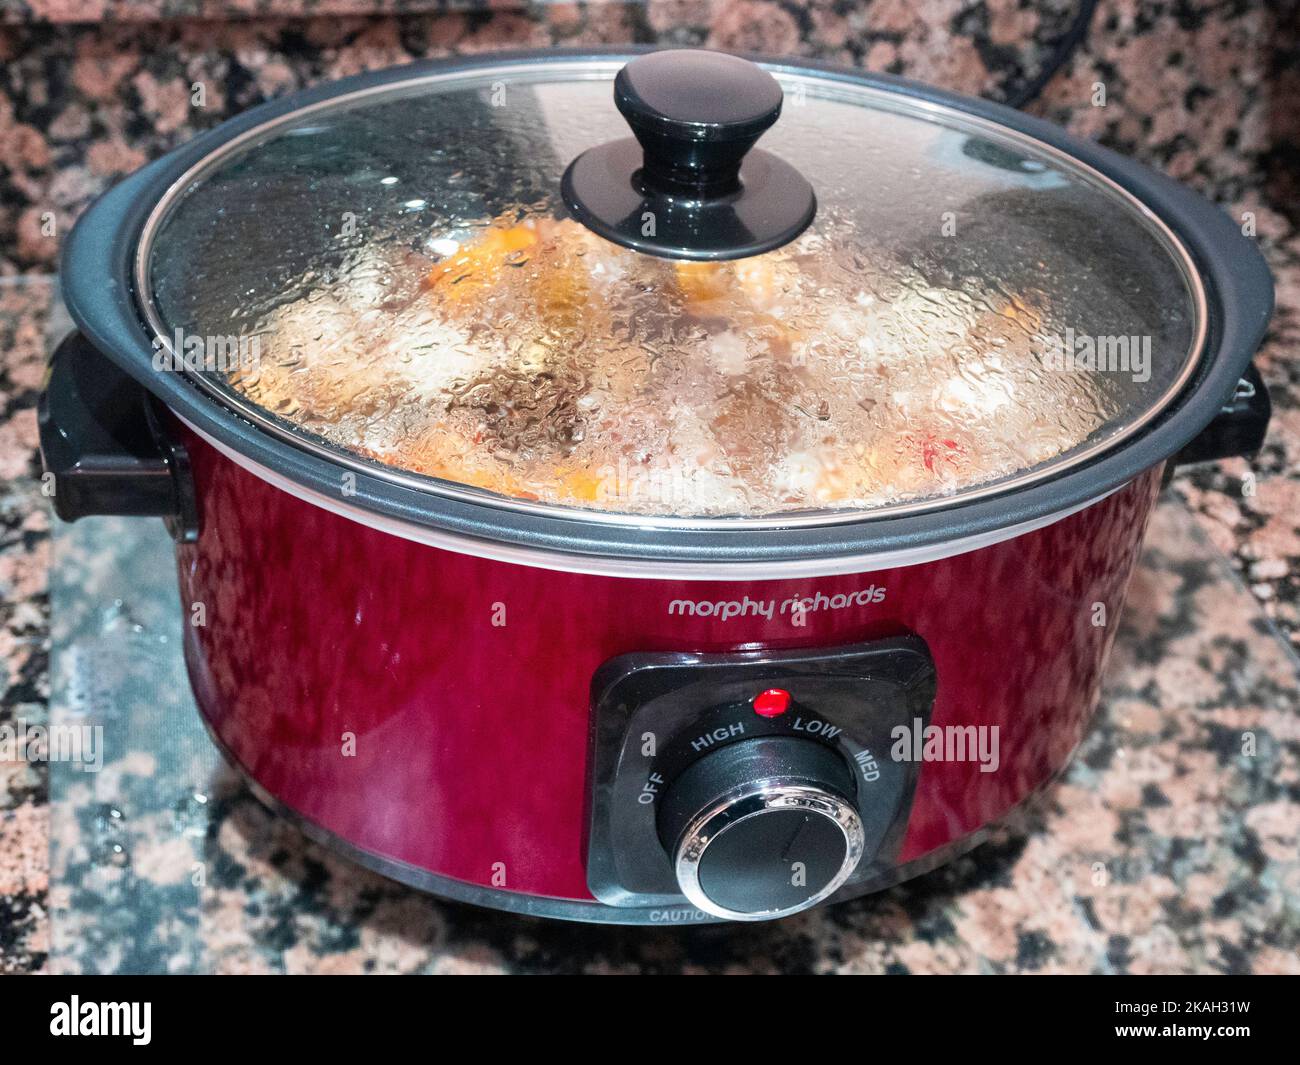 Ein Morphy Richards Elektrogerät für die Slow-Cooker-Küche, das über Nacht einen zubereiteten Eintopf kocht und leckere Speisen mit niedrigem Energieverbrauch liefert Stockfoto